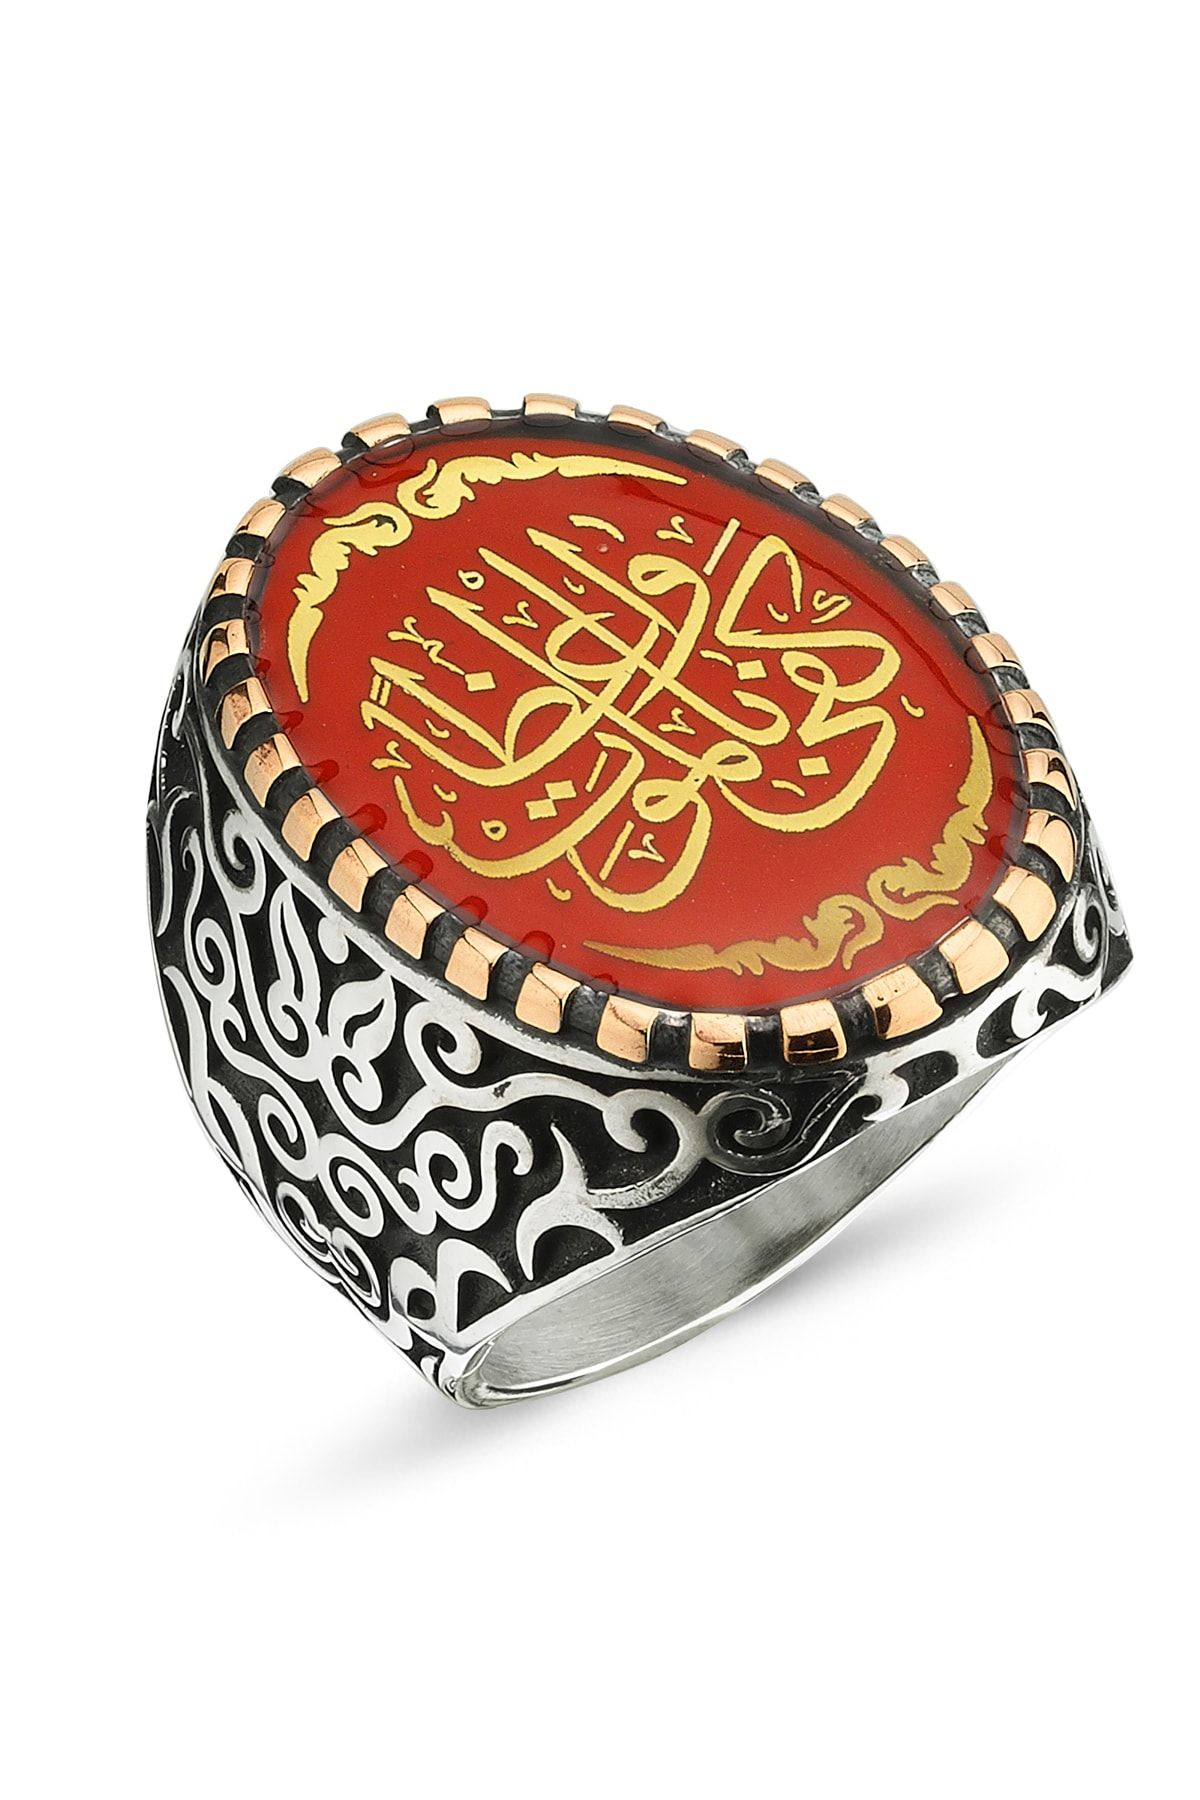 Diriliş Takı Arapça Kefâ Bil-mevt Vaizan (kişiye Nasihat Olarak Ölüm Yeter ) Yazılı Gümüş Yüzük Kırmızı